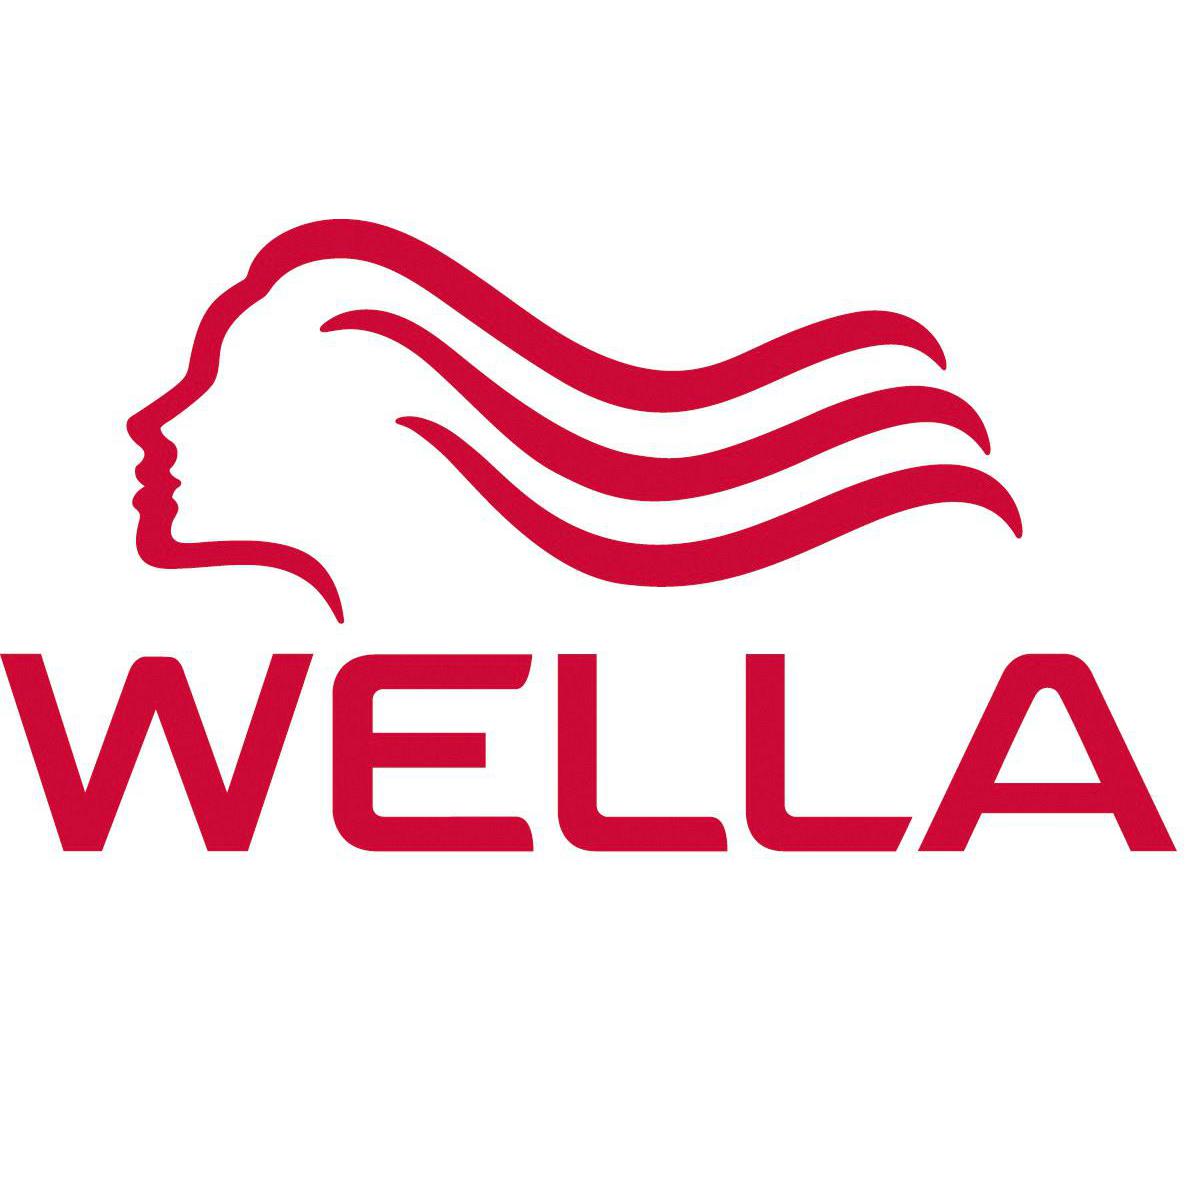 Wella Switzerland SARL Logo